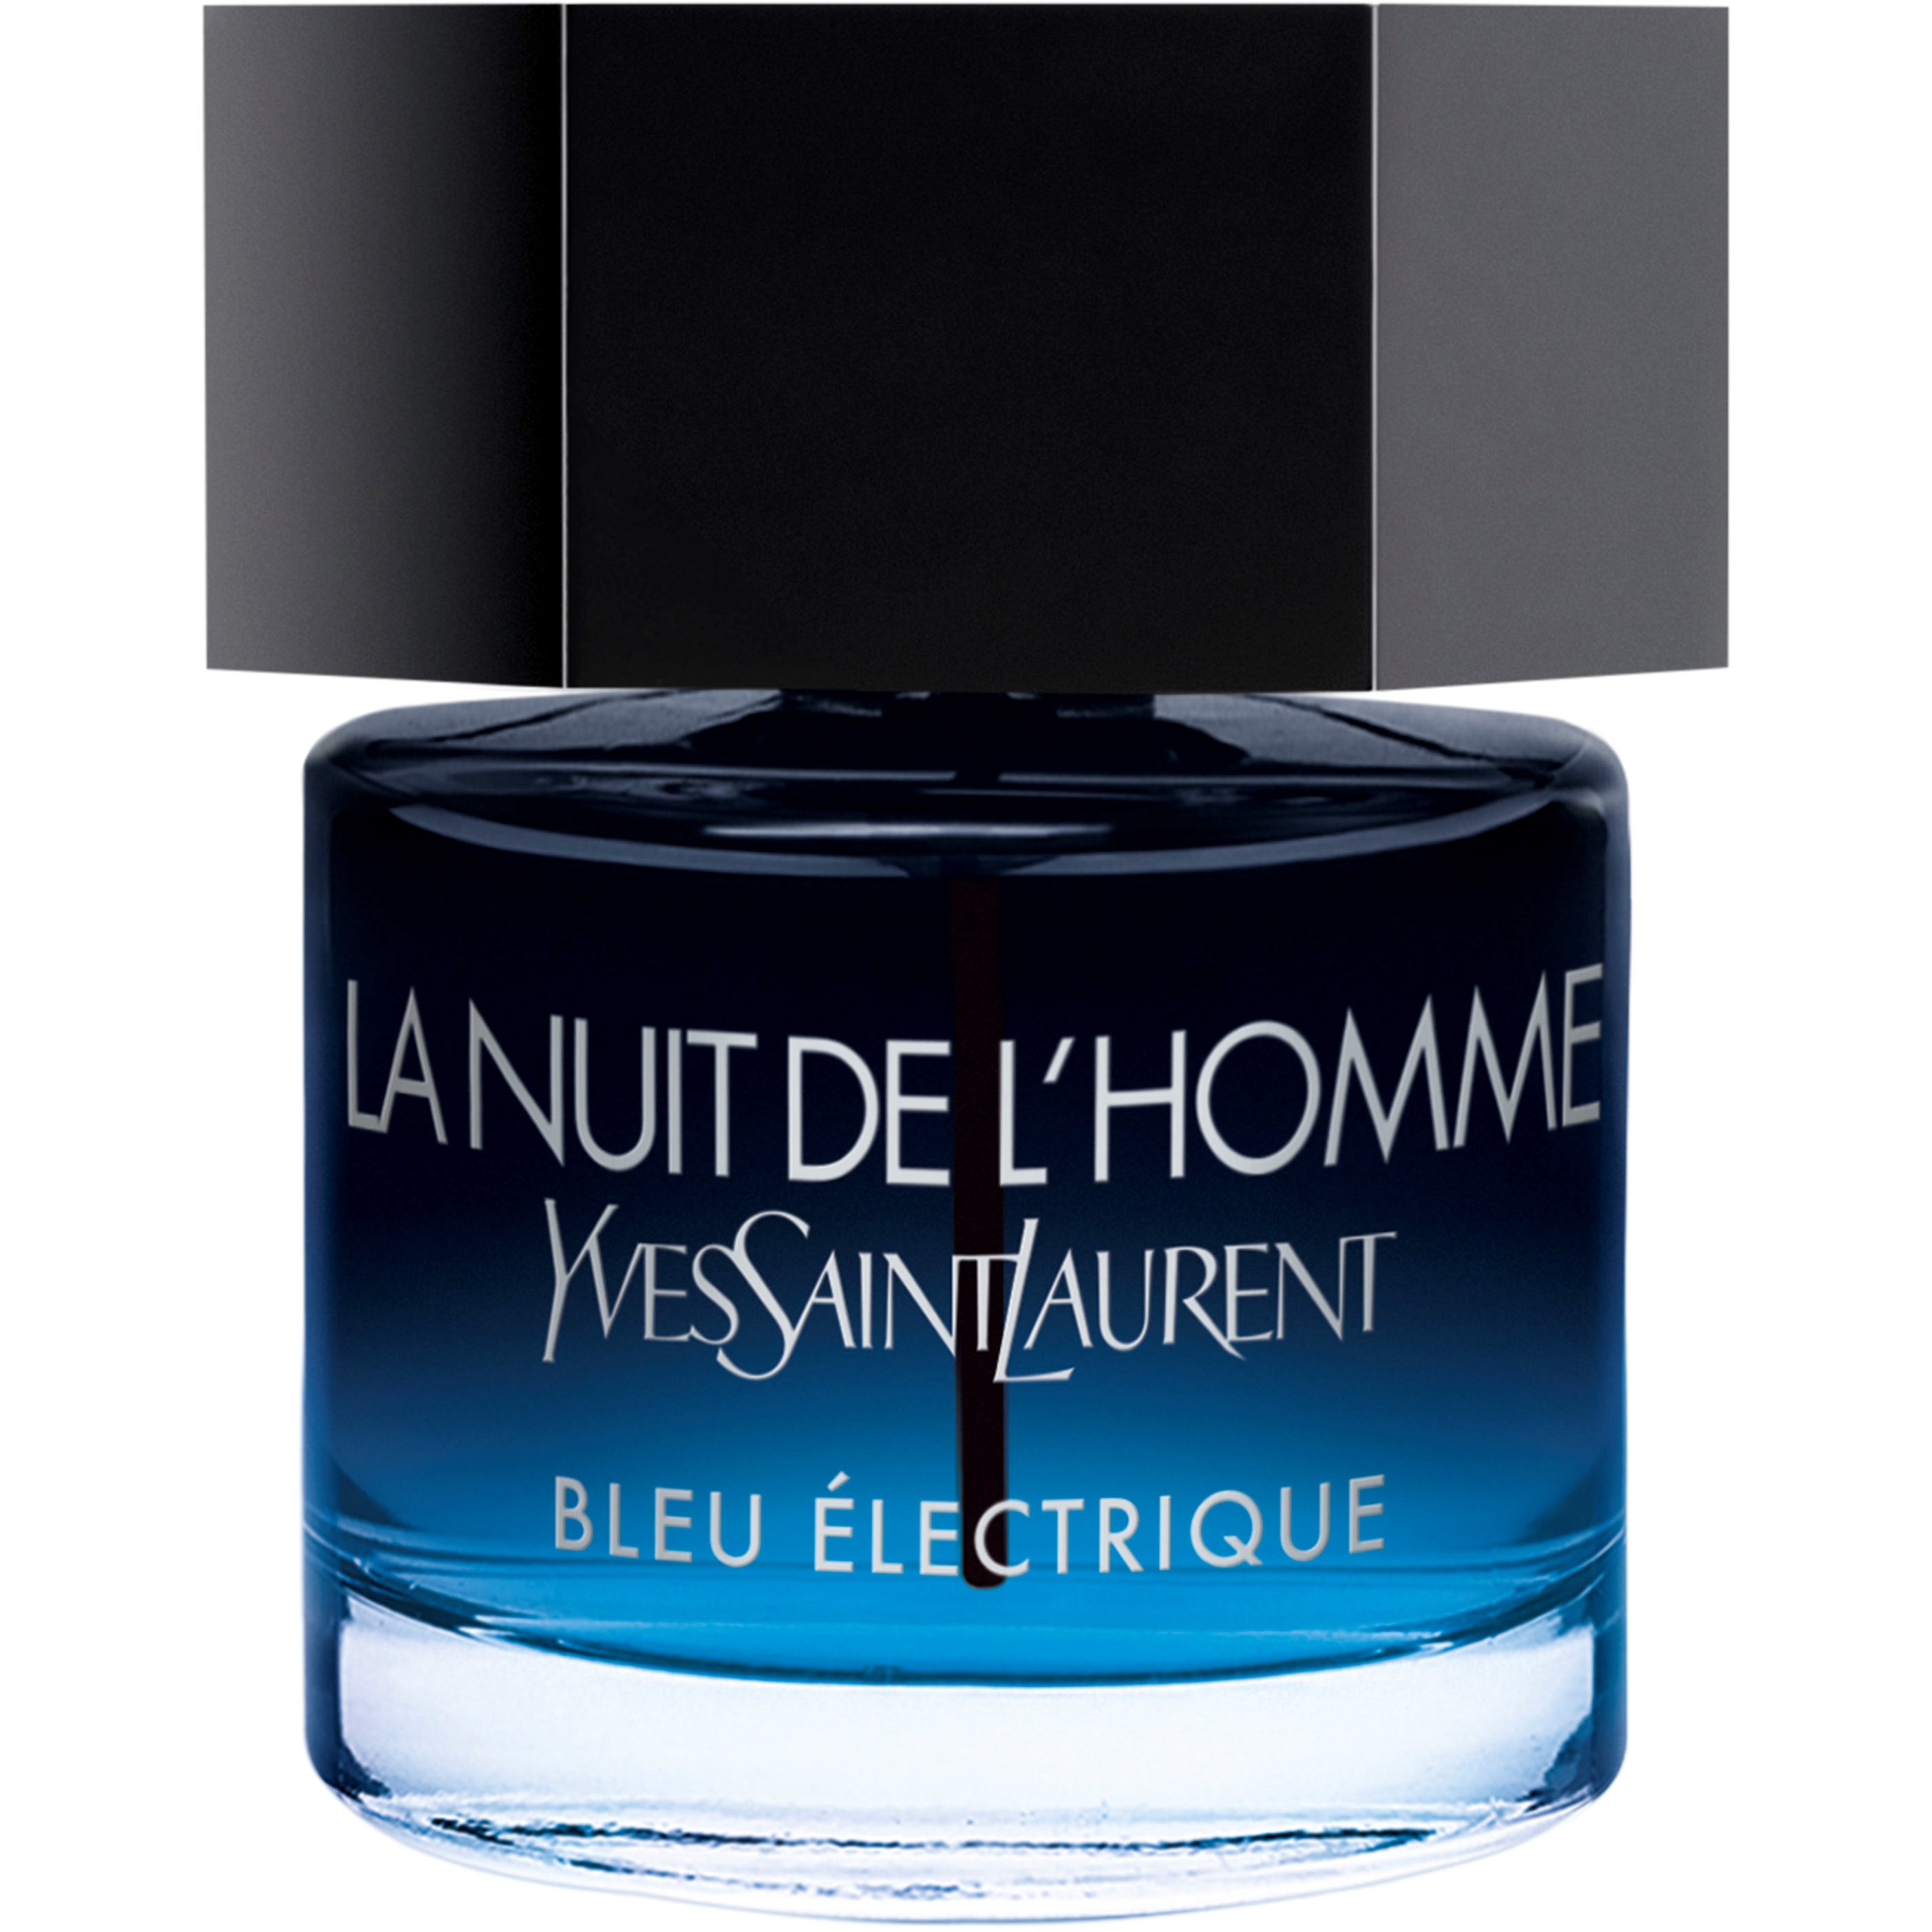 Yves Saint Laurent La Nuit de lHomme Bleu Electrique Eau de Toilette